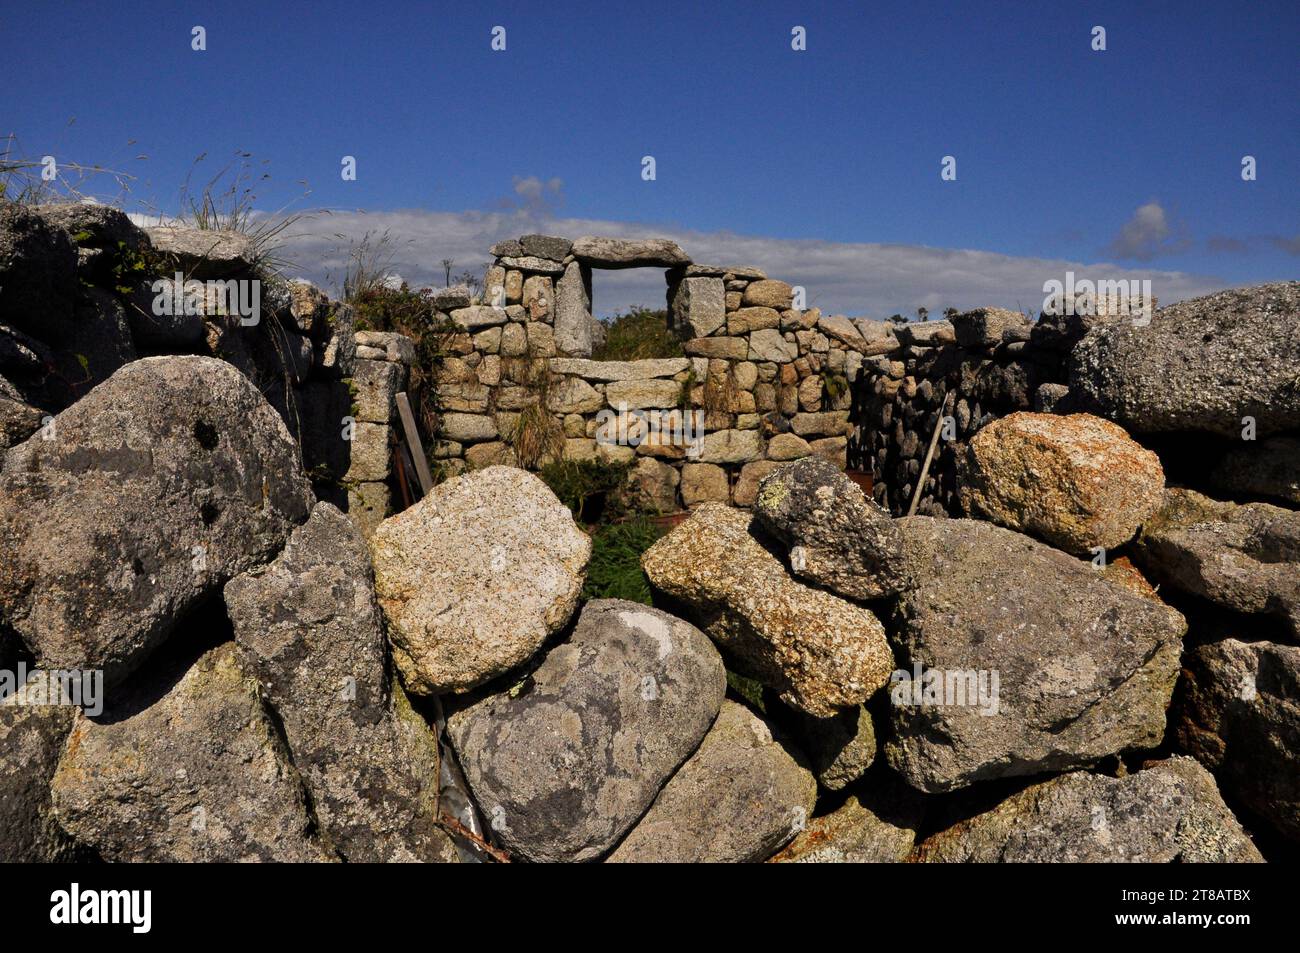 Cabaña de piedra de granito en ruinas en la isla de St Martins en las islas de Scilly indica el estilo de vida tranquilo y suave de las islas. El brillante cielo azul ingenio Foto de stock